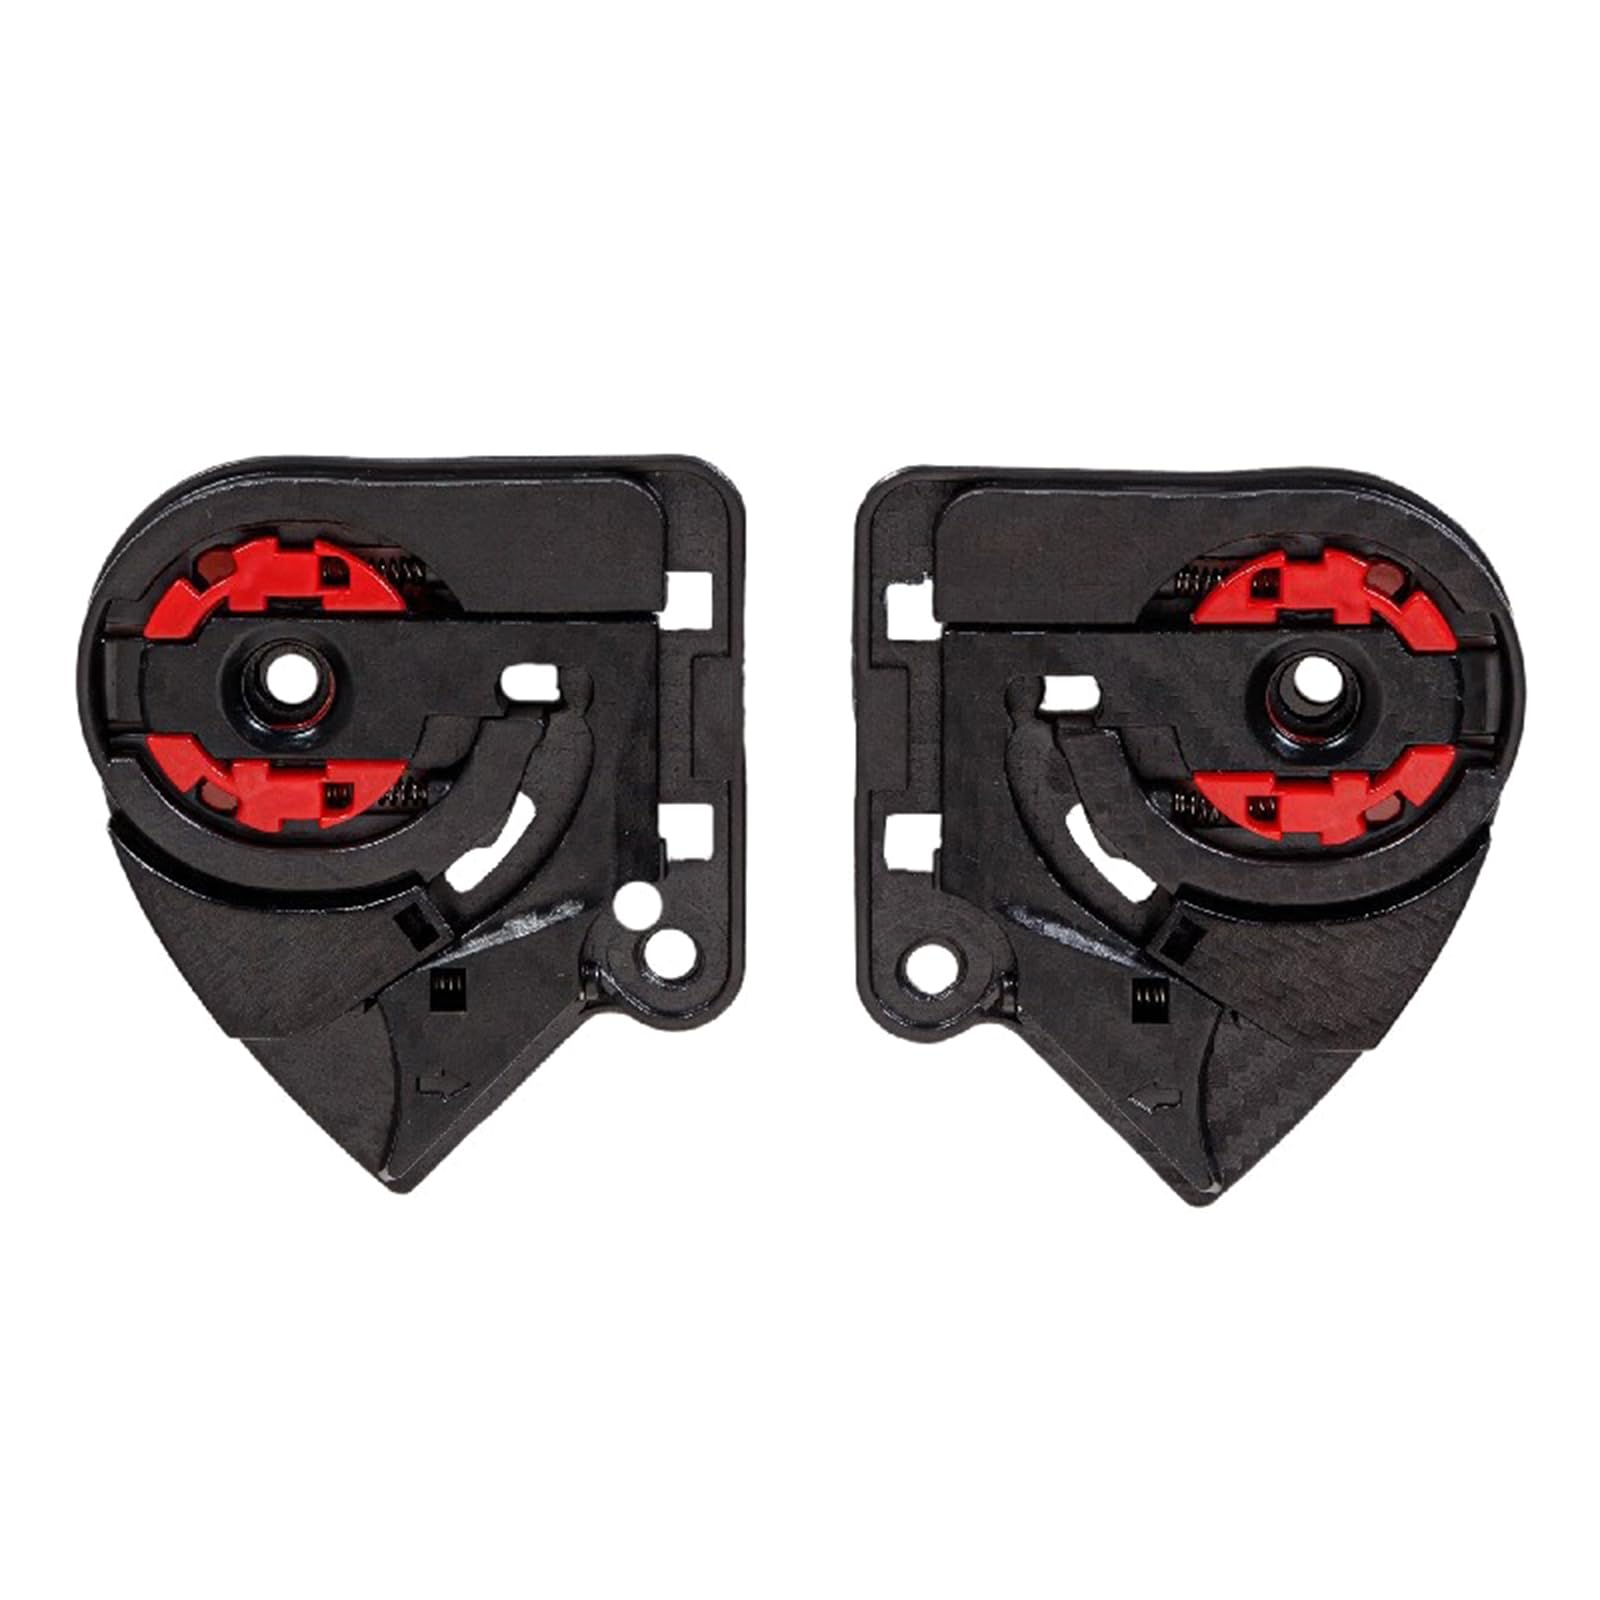 BAHJKASD 1 Paar Motorradhelme Objektivvisiere Clip Shield Lock Visiere Fixierung Grundplatte für FF801 FF323 FF390 FF397 OF521 von BAHJKASD